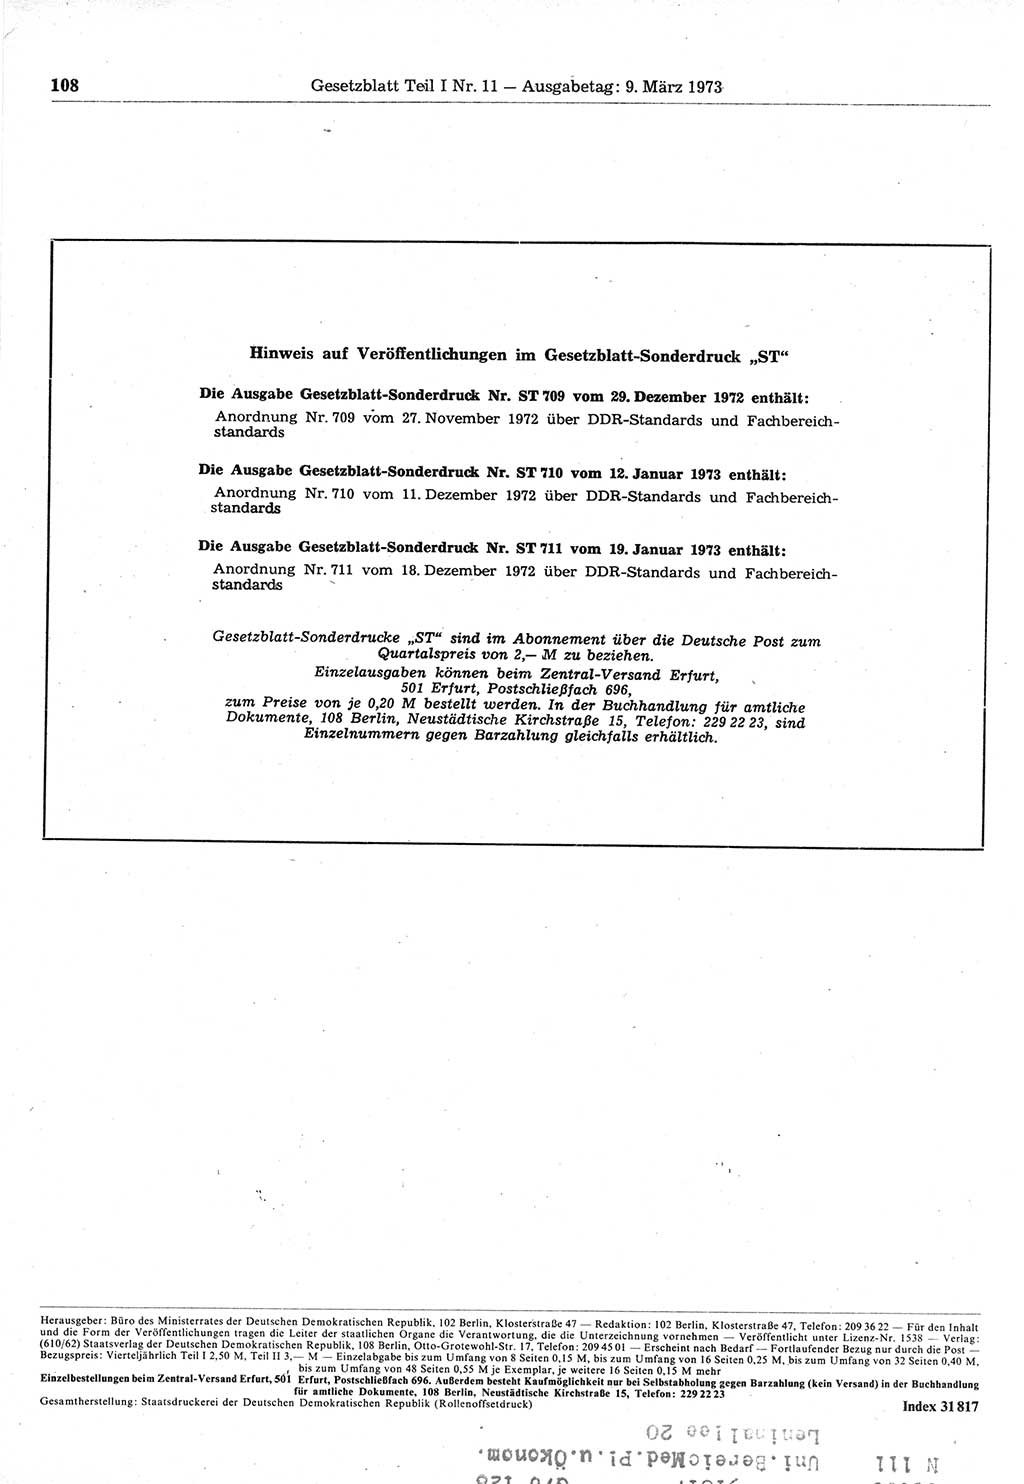 Gesetzblatt (GBl.) der Deutschen Demokratischen Republik (DDR) Teil Ⅰ 1973, Seite 108 (GBl. DDR Ⅰ 1973, S. 108)